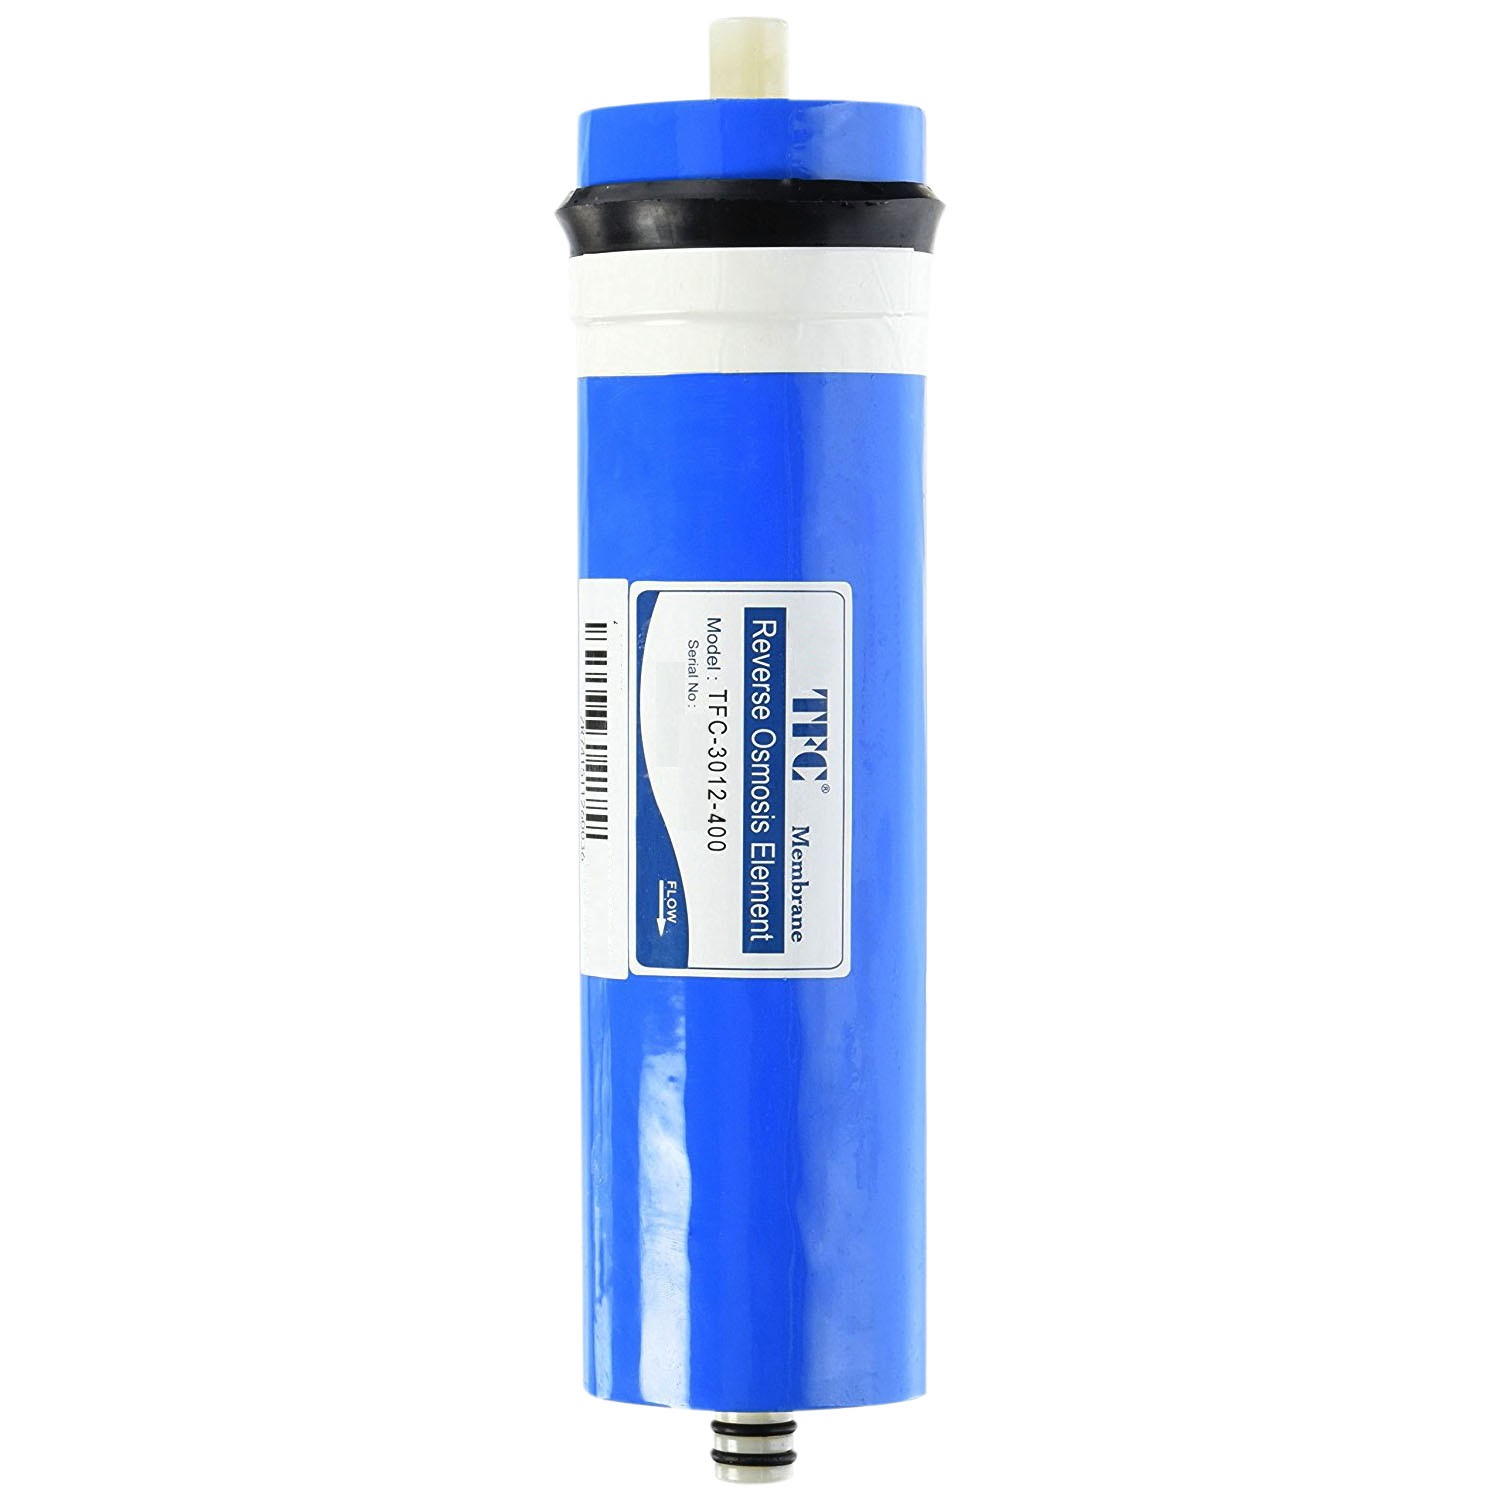 فیلتر دستگاه تصفیه کننده آب تی اف سی مدل 3012-400